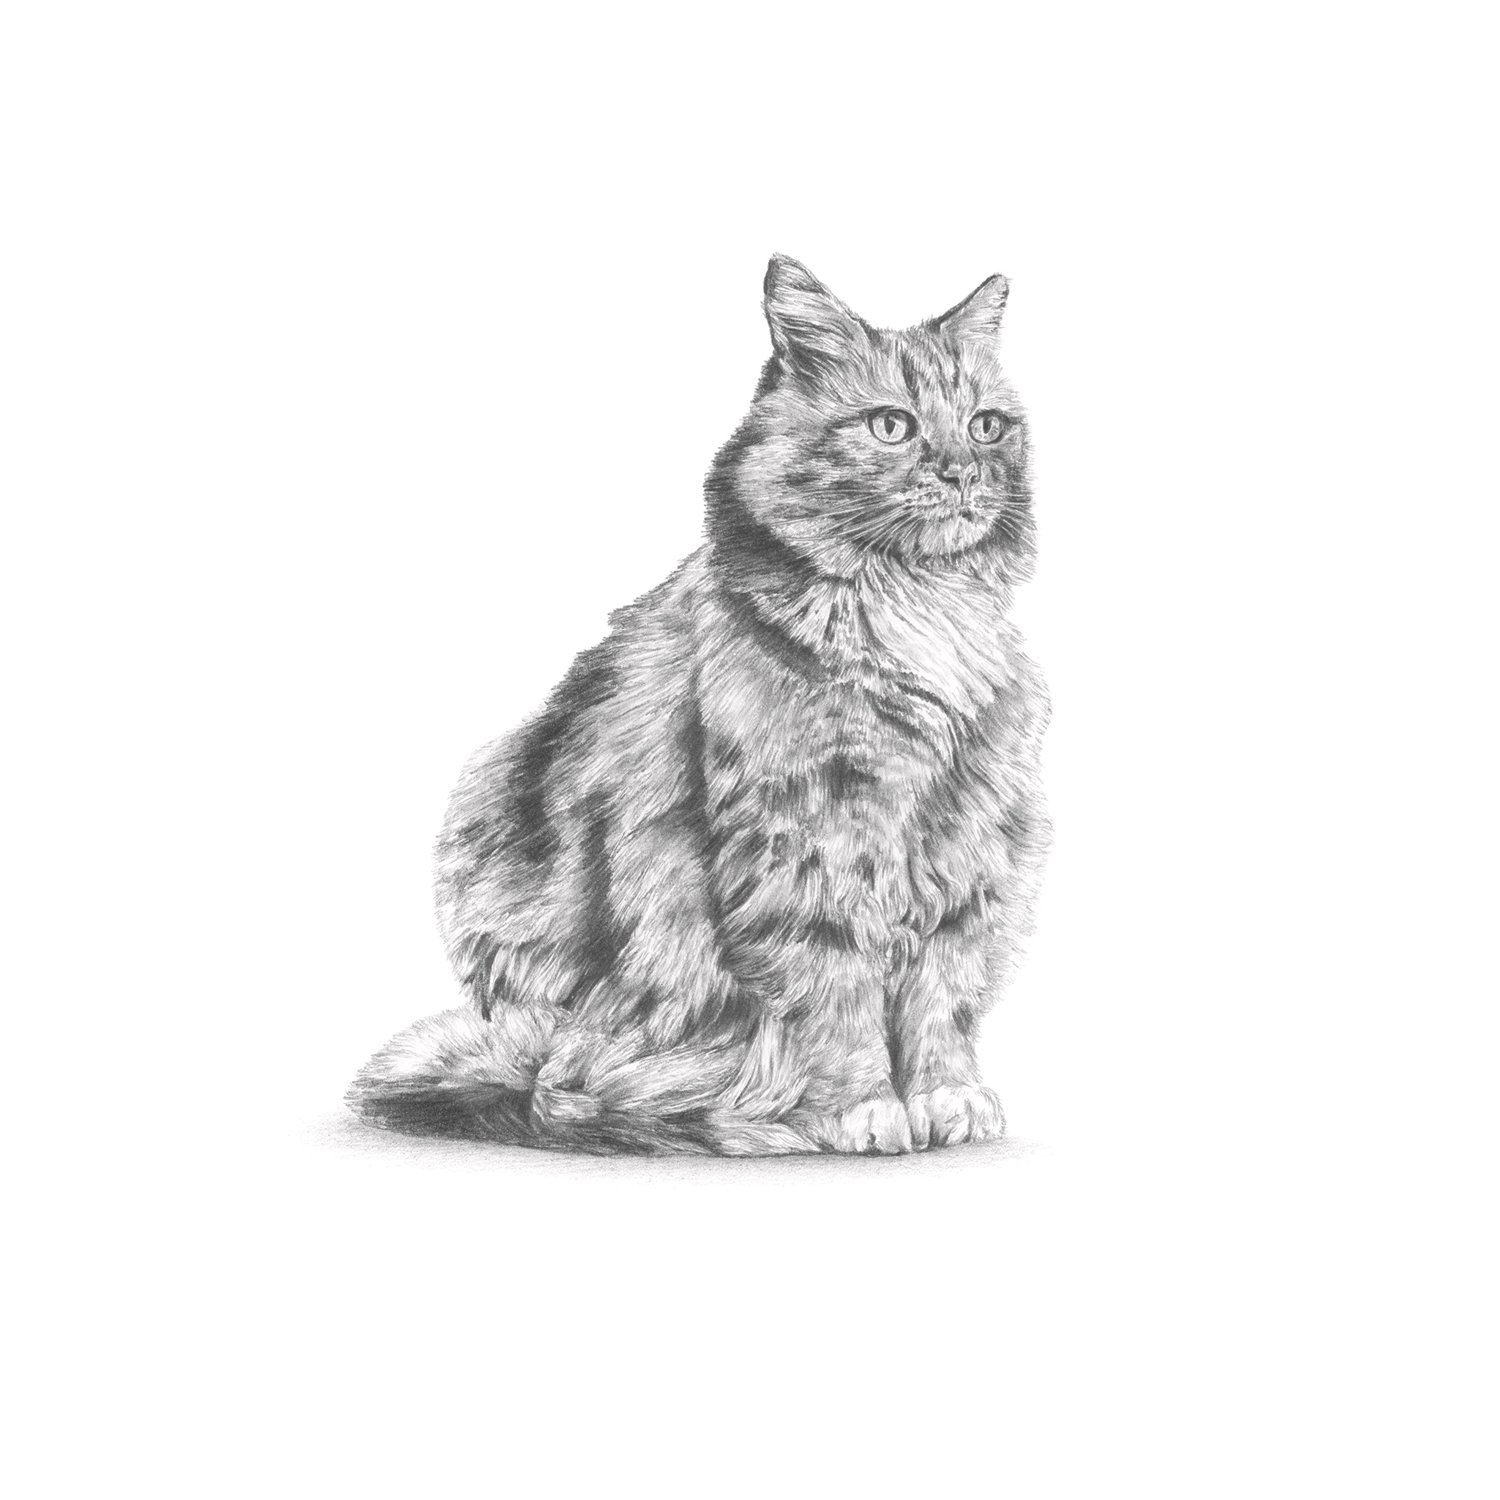 jo-murphy-commission-portrait-cat-2.jpg